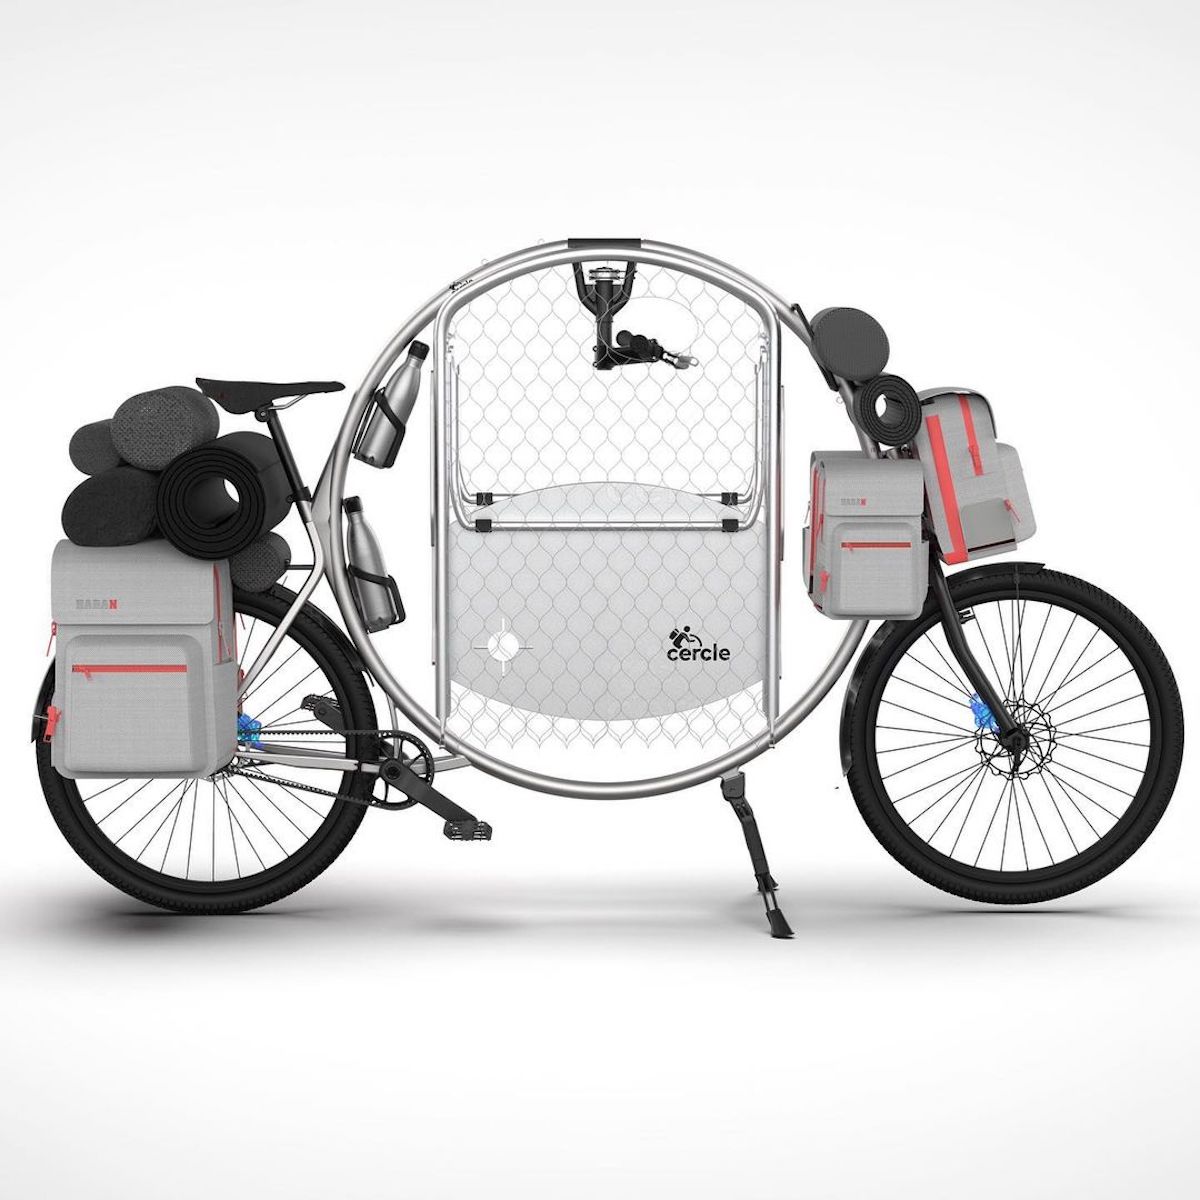 Cercle The World : le vélo circulaire conçu pour le camping